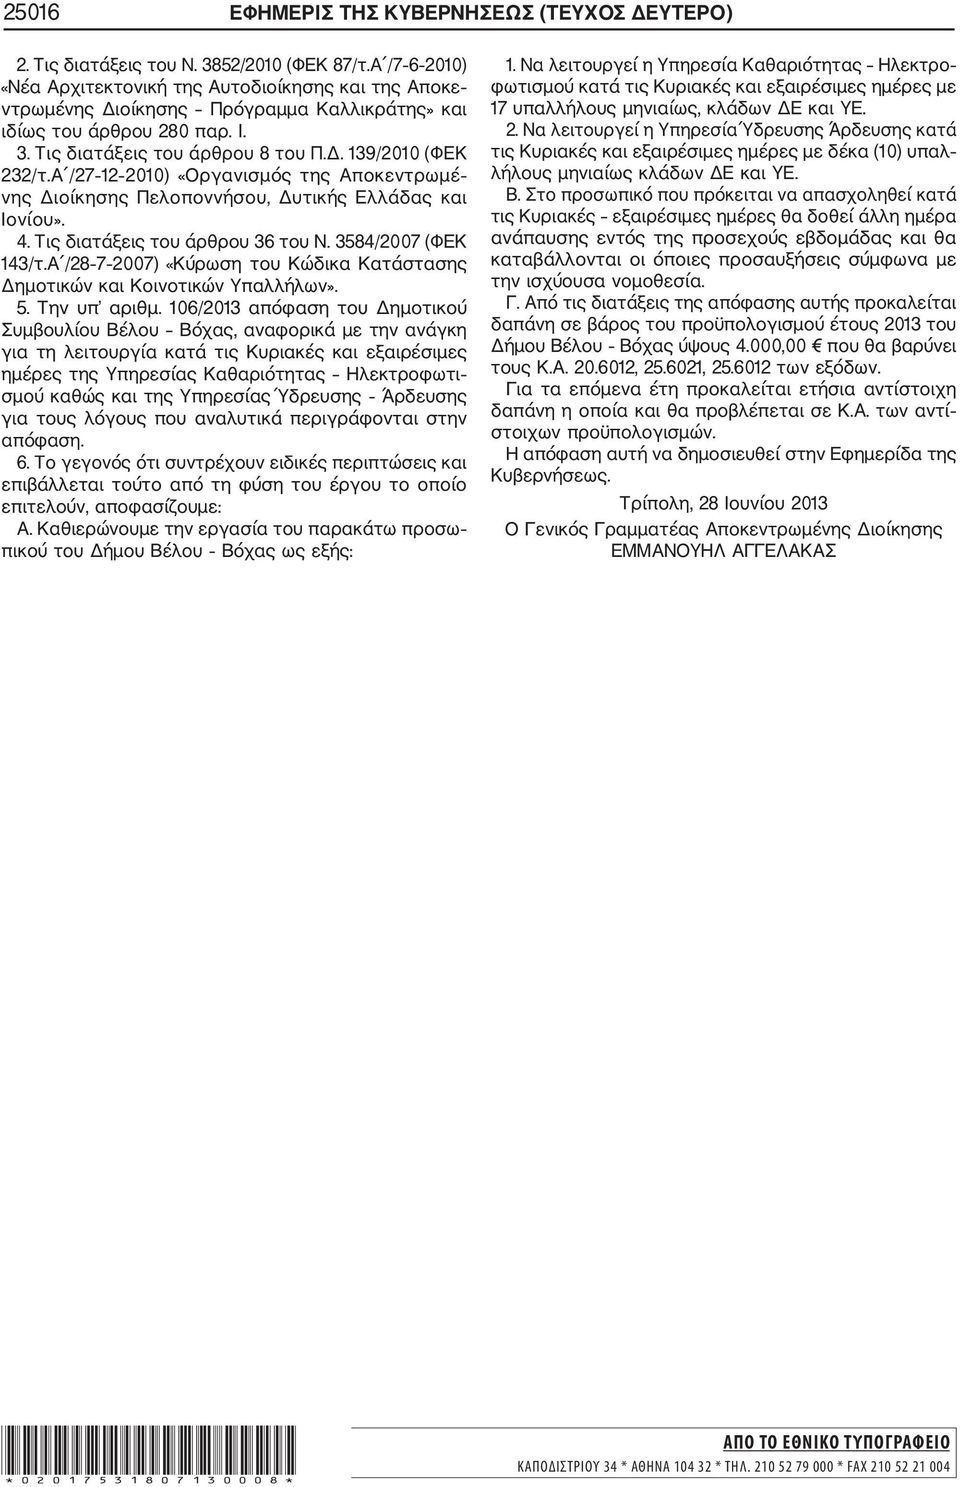 Α /27 12 2010) «Οργανισμός της Αποκεντρωμέ νης Διοίκησης Πελοποννήσου, Δυτικής Ελλάδας και Ιονίου». 4. Τις διατάξεις του άρθρου 36 του Ν. 3584/2007 (ΦΕΚ 143/τ.